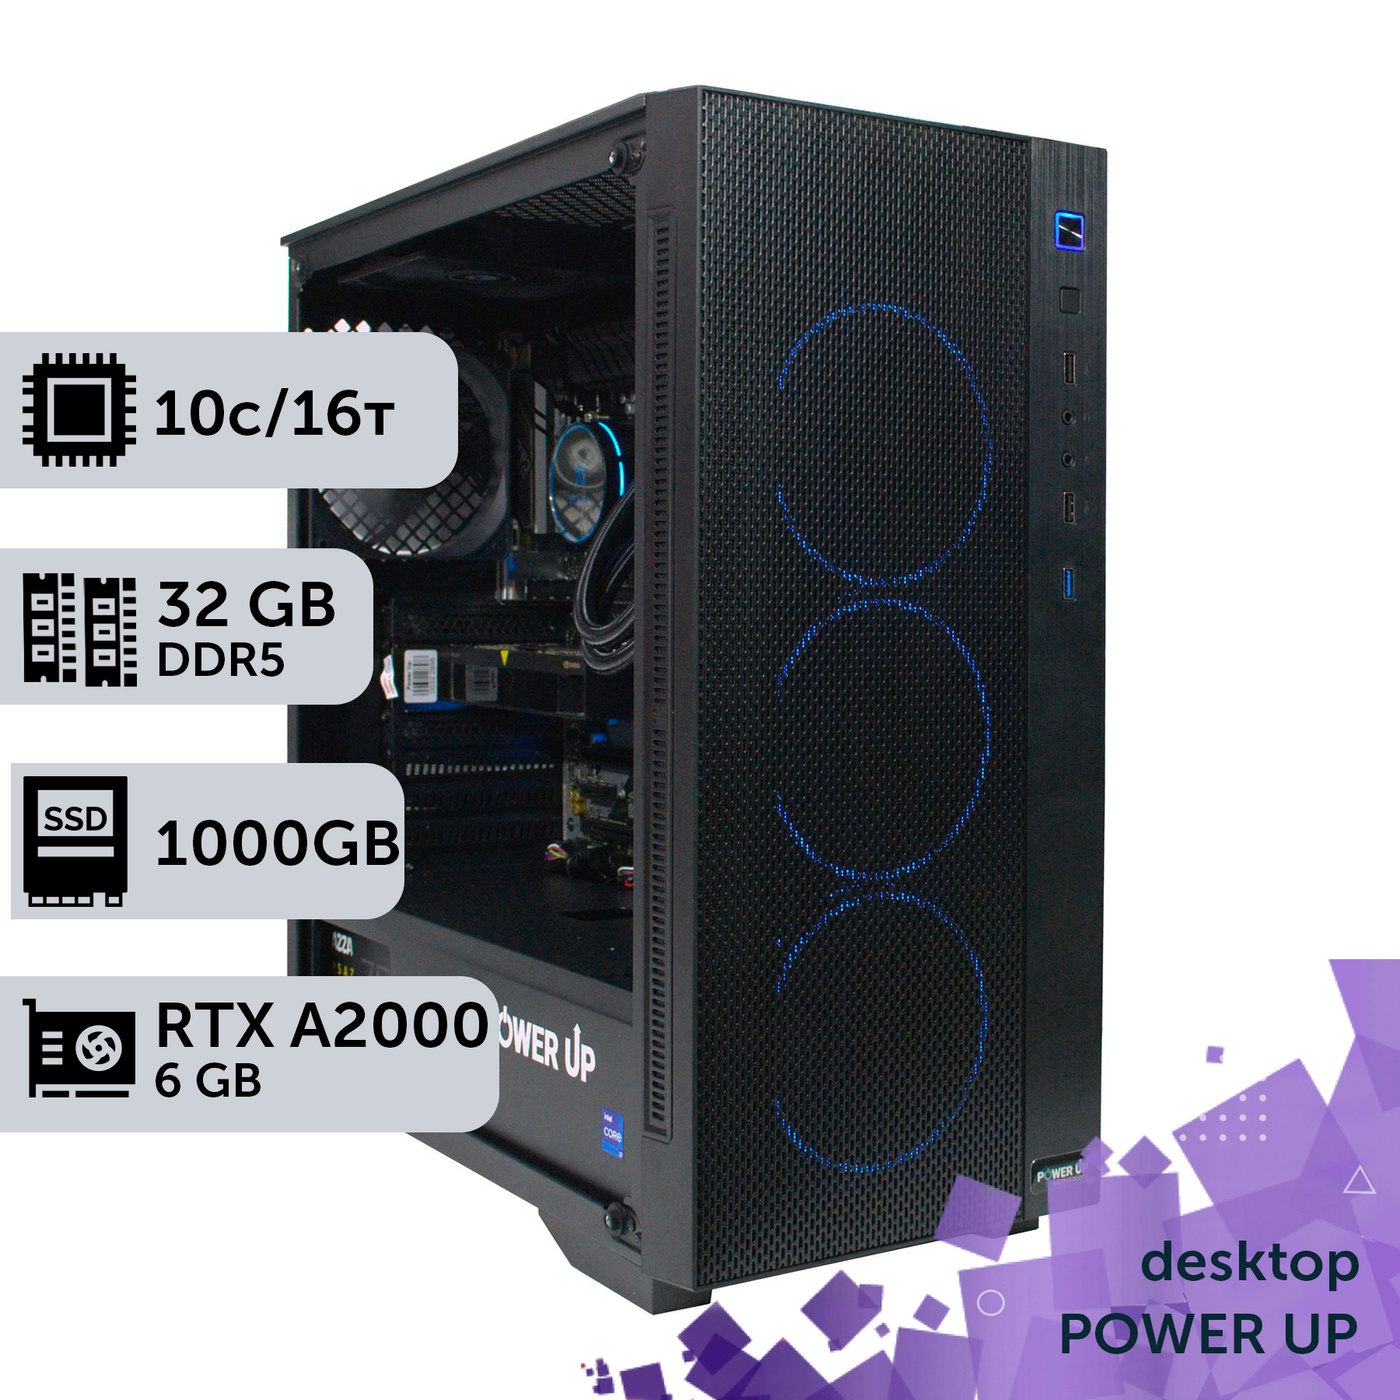 Рабочая станция PowerUp Desktop #399 Core i5 13400F/32 GB/SSD 1TB/NVIDIA Quadro RTX A2000 6GB